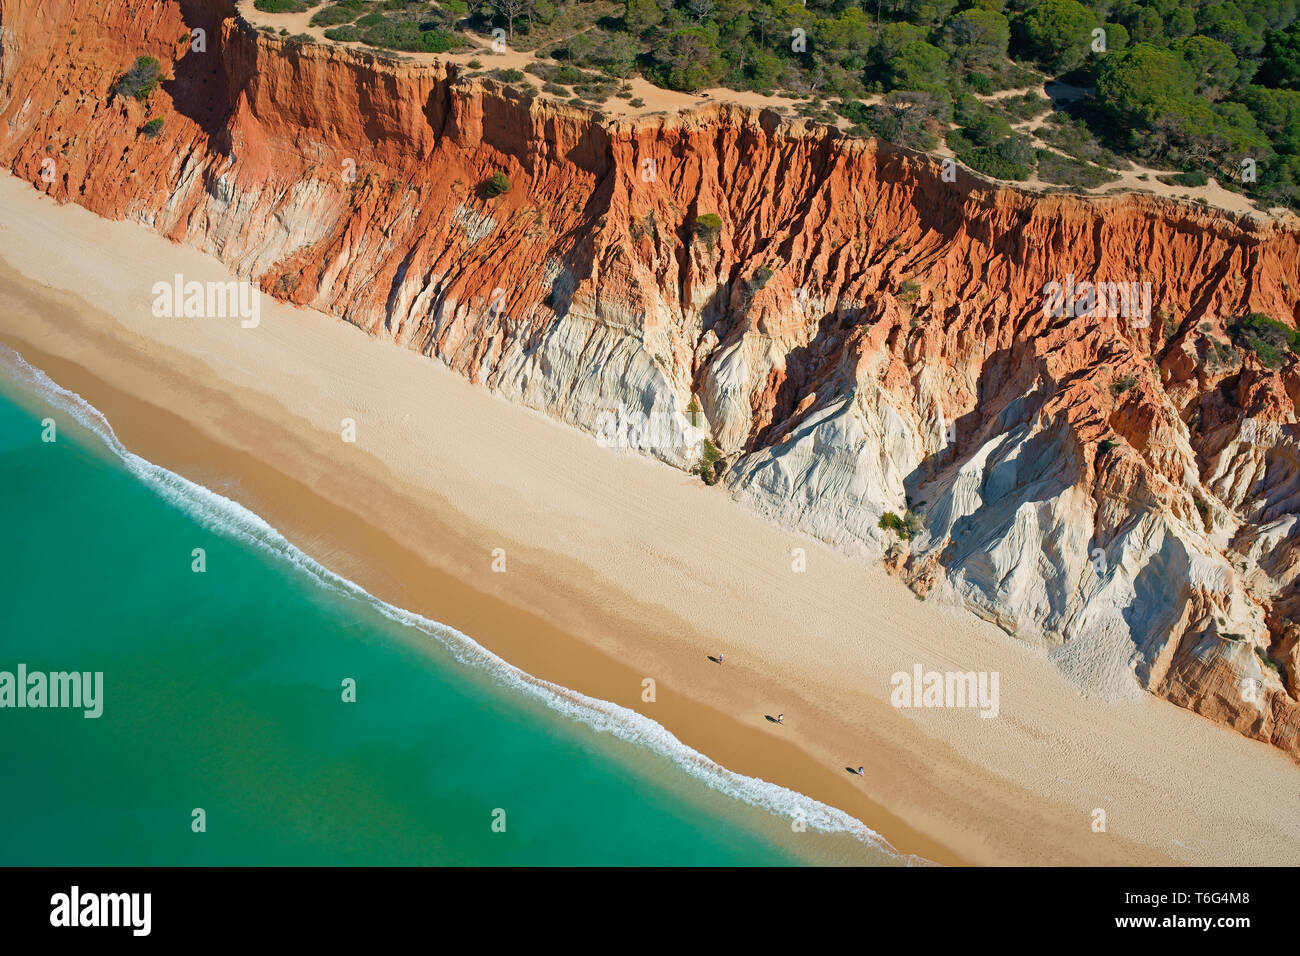 VISTA AEREA. Praia da Falésia (spiaggia della scogliera); una scogliera erosa sul mare con strati multicolore. Albufeira, Algarve, Portogallo. Foto Stock